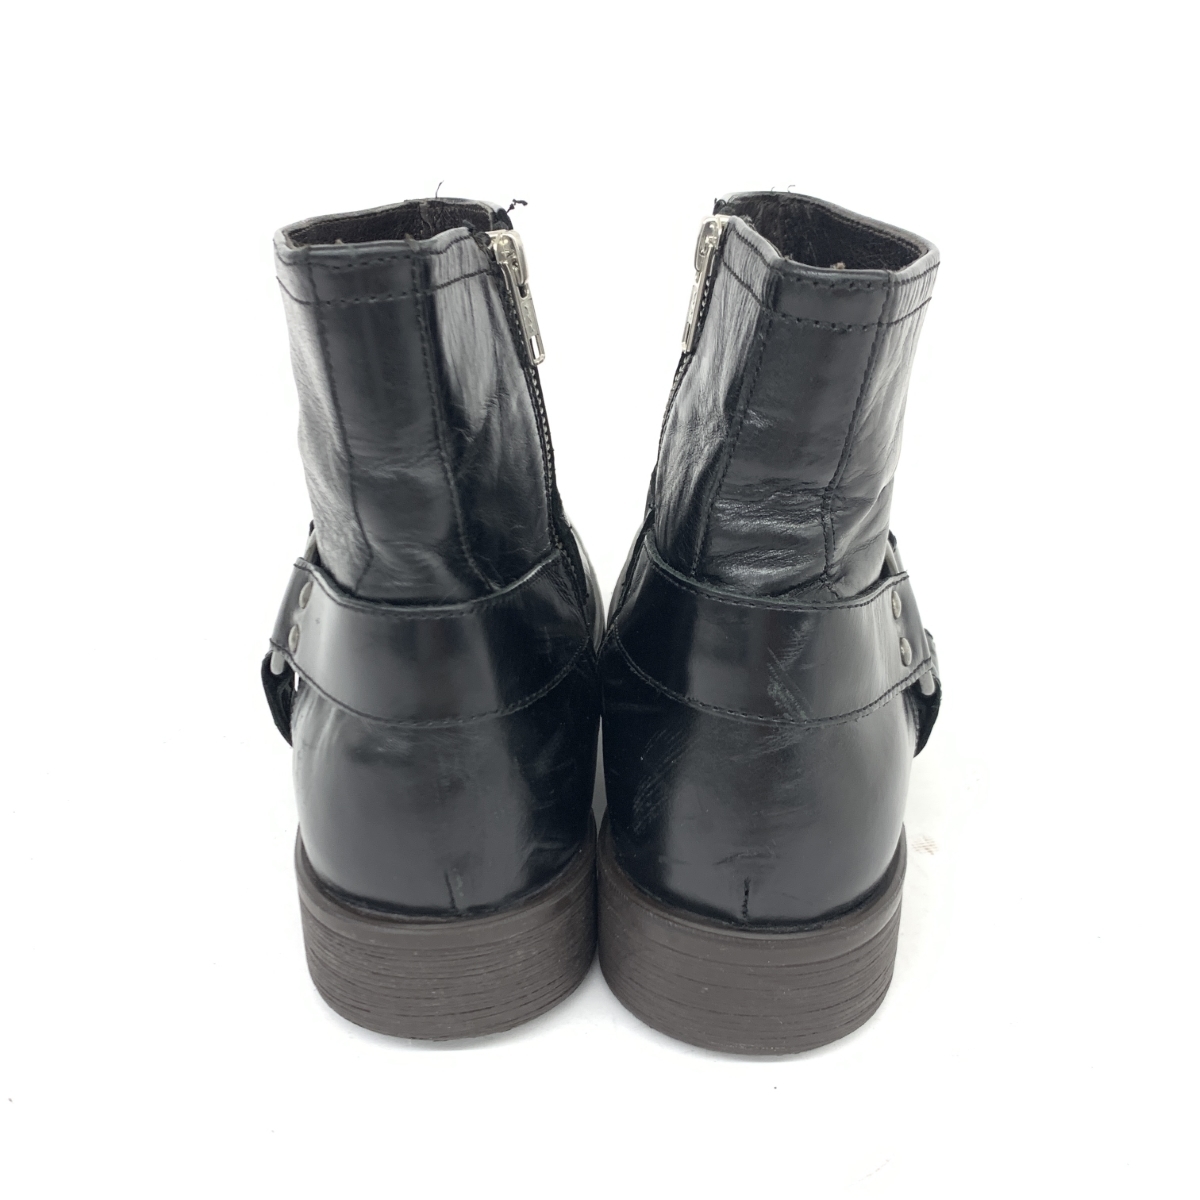 ◆stefanorossi ステファノロッシ ショートブーツ 41◆SR03757 ブラック レザー リング サイドジップ メンズ 靴 boots ワークブーツ_画像4